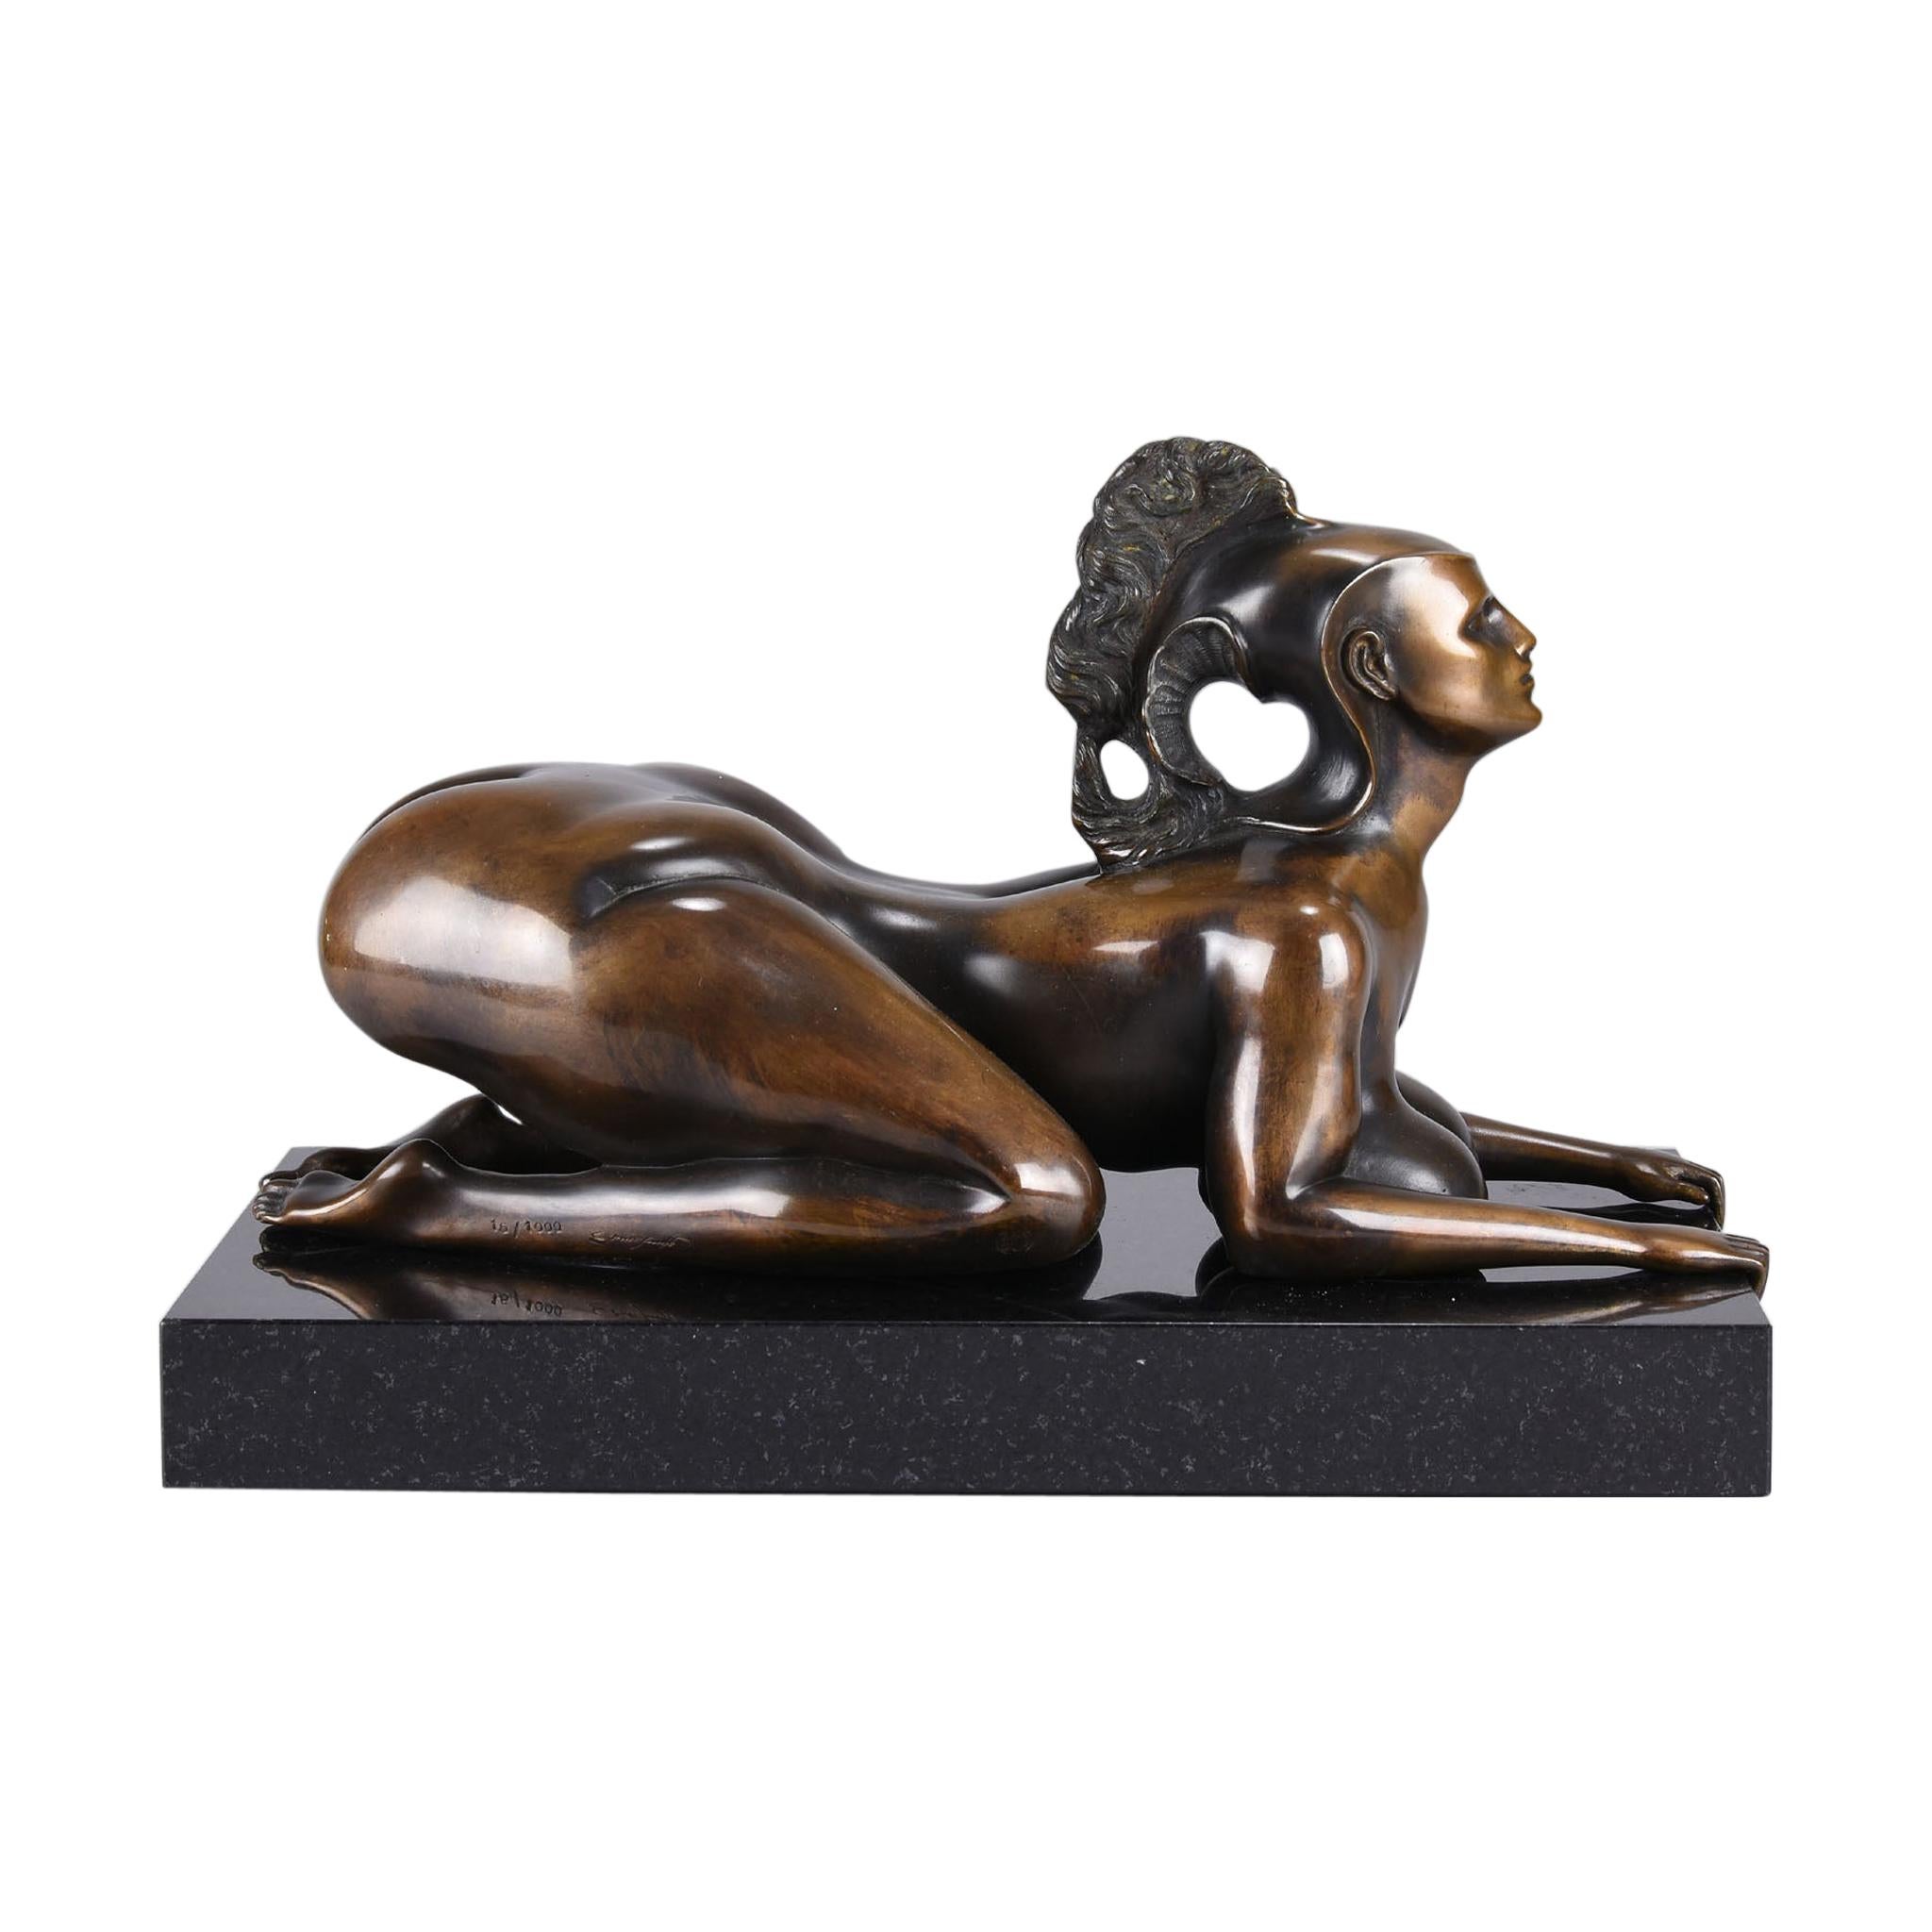 Limited Edition Austrian Bronze Figure 'Sphinx' by Ernst Fuchs